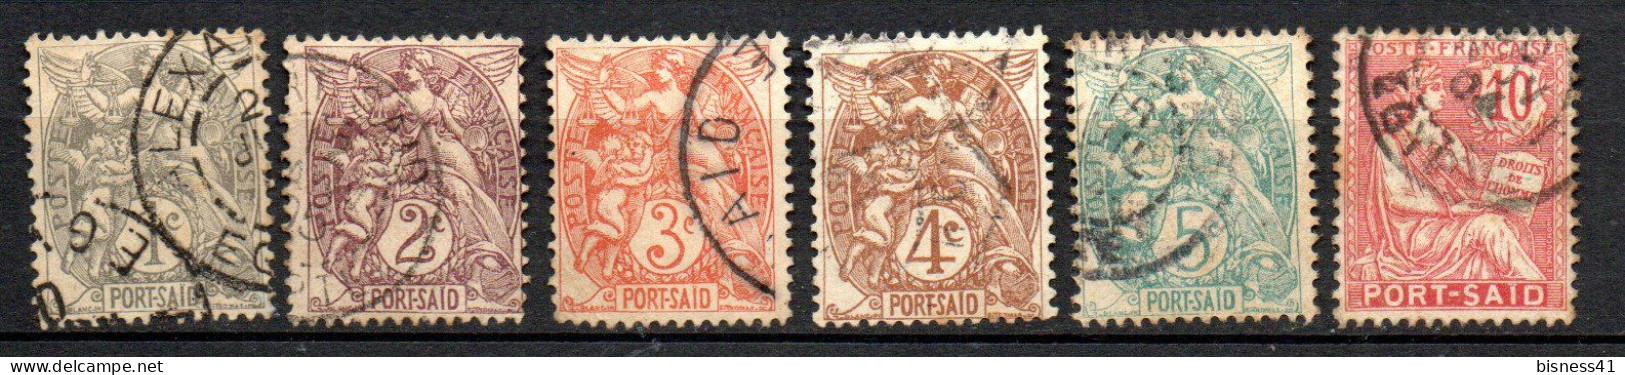 Col33 Colonie Port Said N° 20 à 25 Oblitéré Cote : 5,50 € - Used Stamps